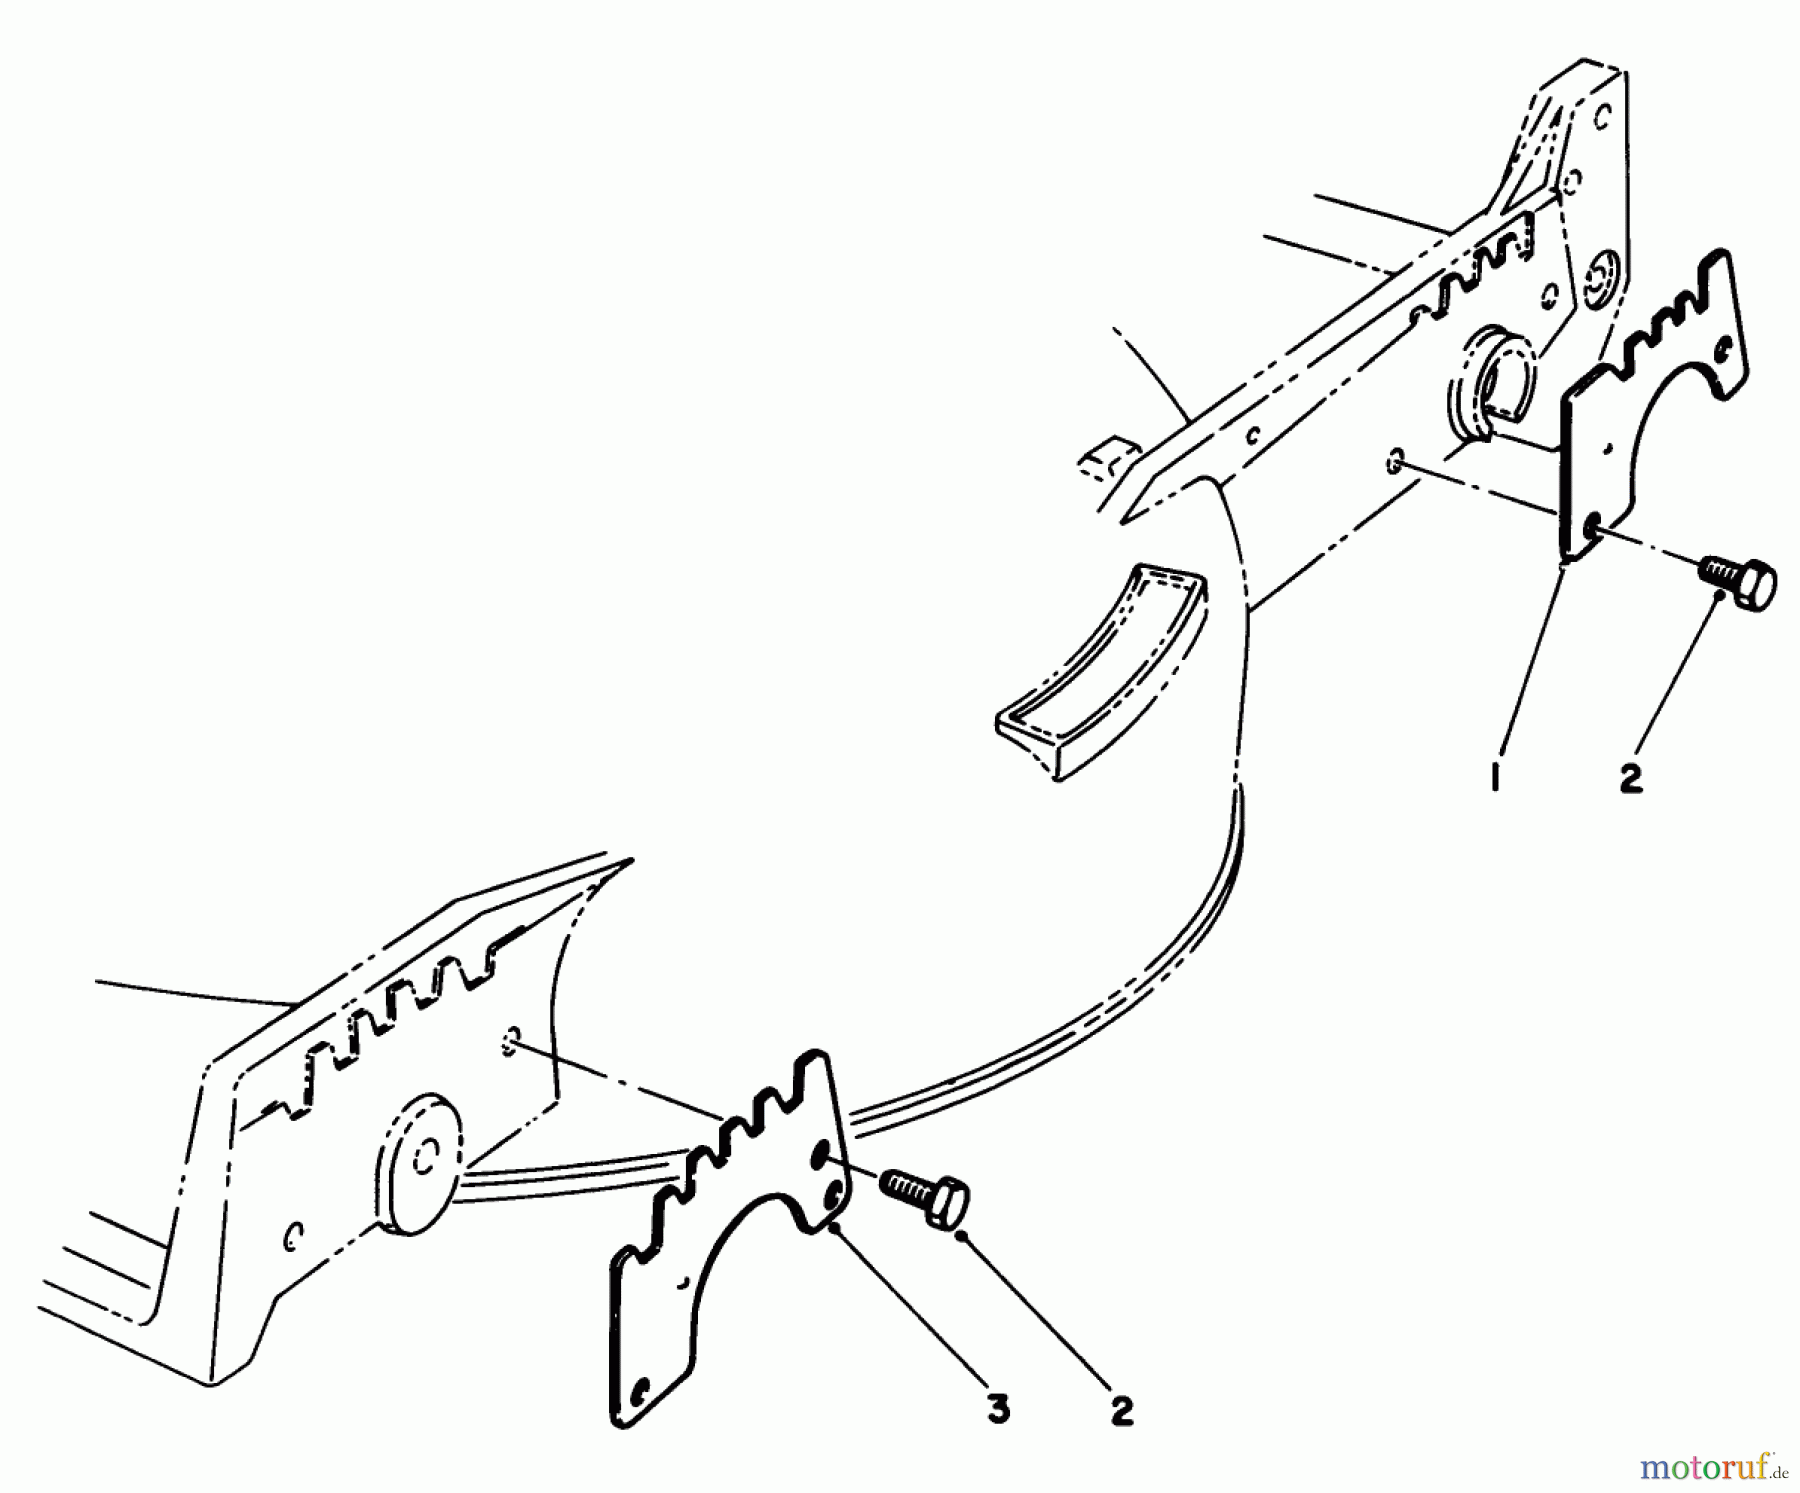  Toro Neu Mowers, Walk-Behind Seite 1 20629C - Toro Lawnmower, 1987 (7000001-7999999) WEAR PLATE KIT NO. 49-4080 (OPTIONAL)